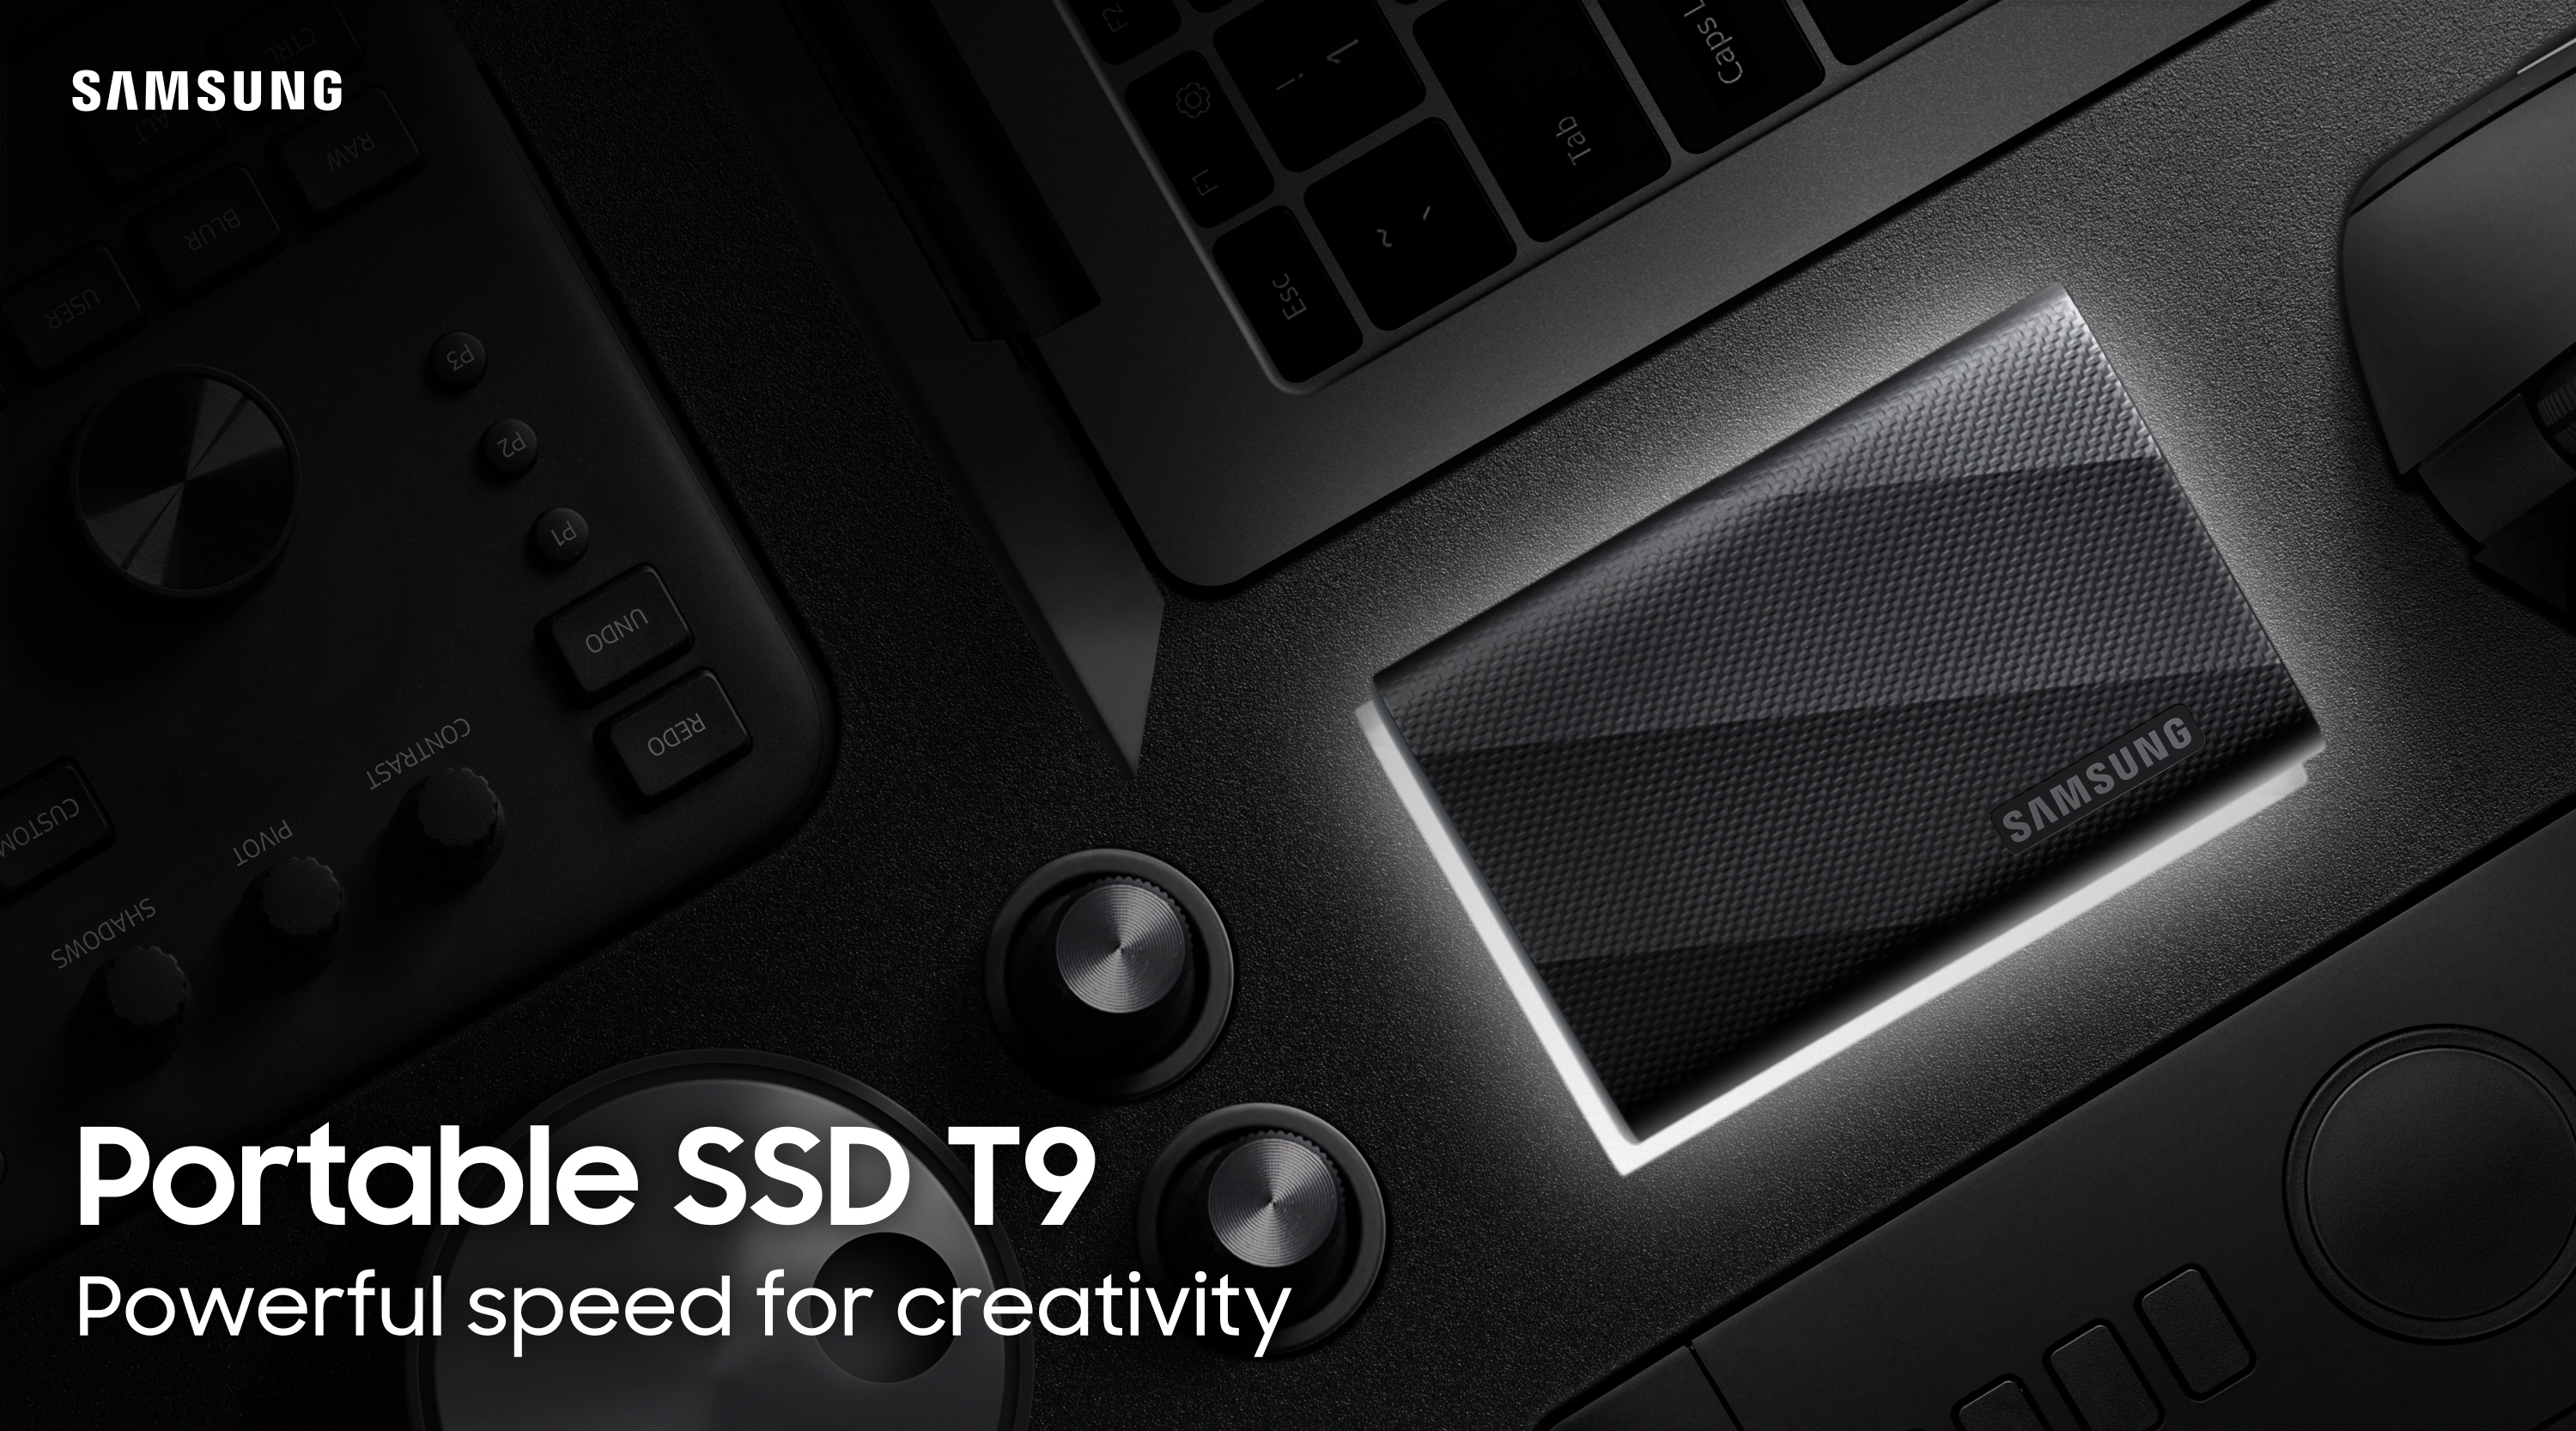 Dysk zewnętrzny SSD T9 od Samsung zapewnia nadzwyczajną wydajność i bezpieczeństwo danych